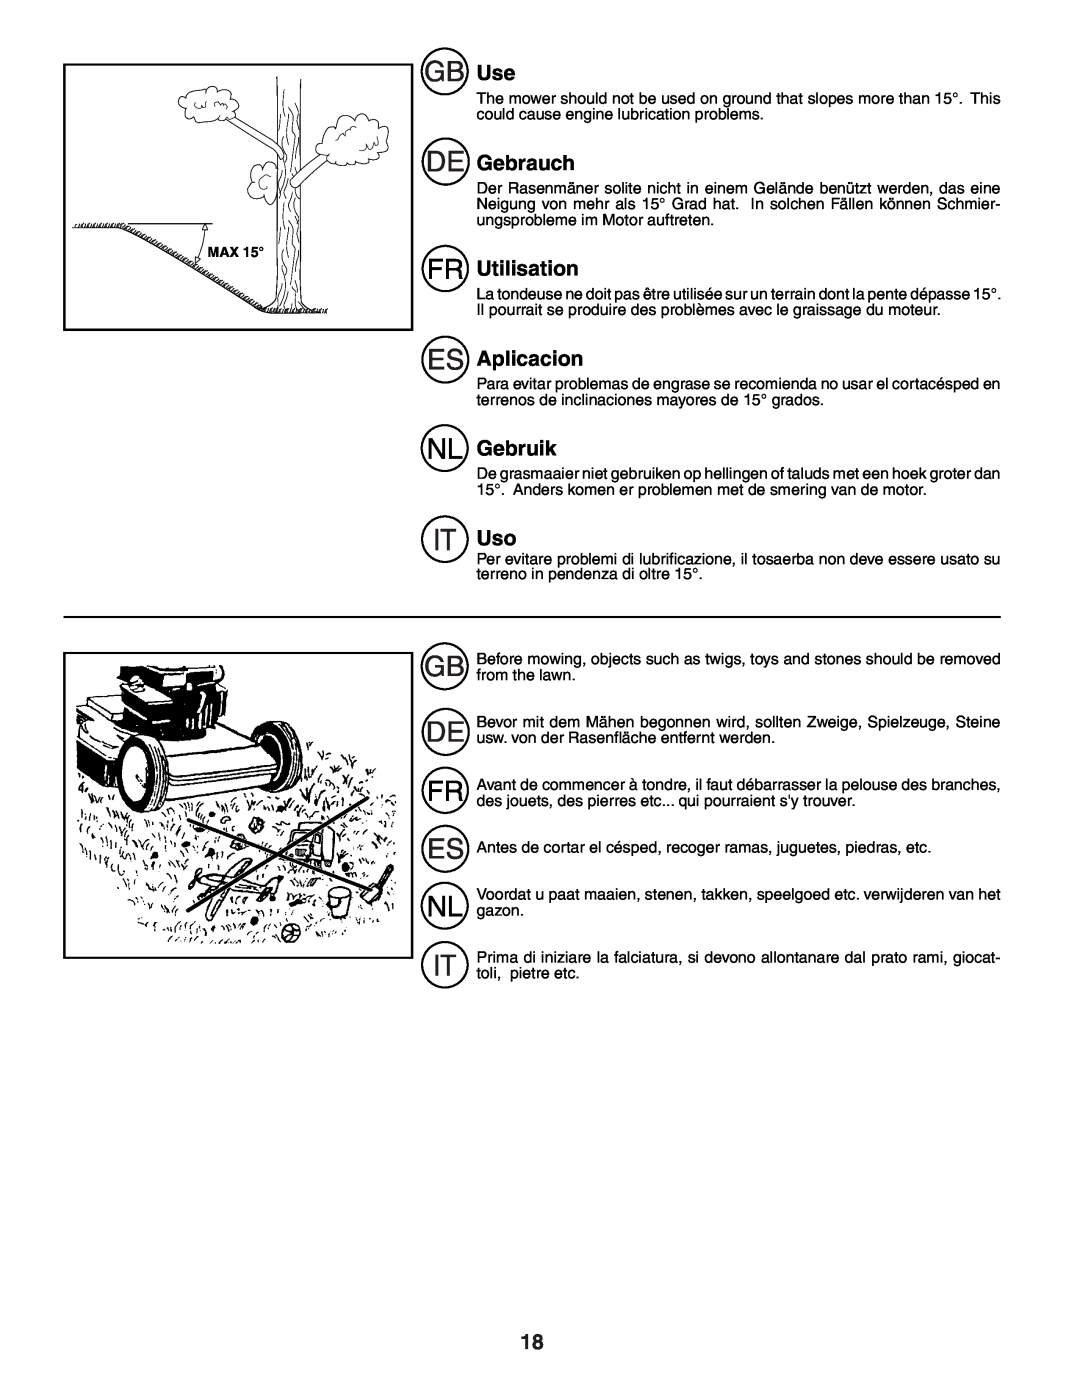 Husqvarna R152SV instruction manual Gebrauch, Utilisation, Aplicacion, Gebruik 